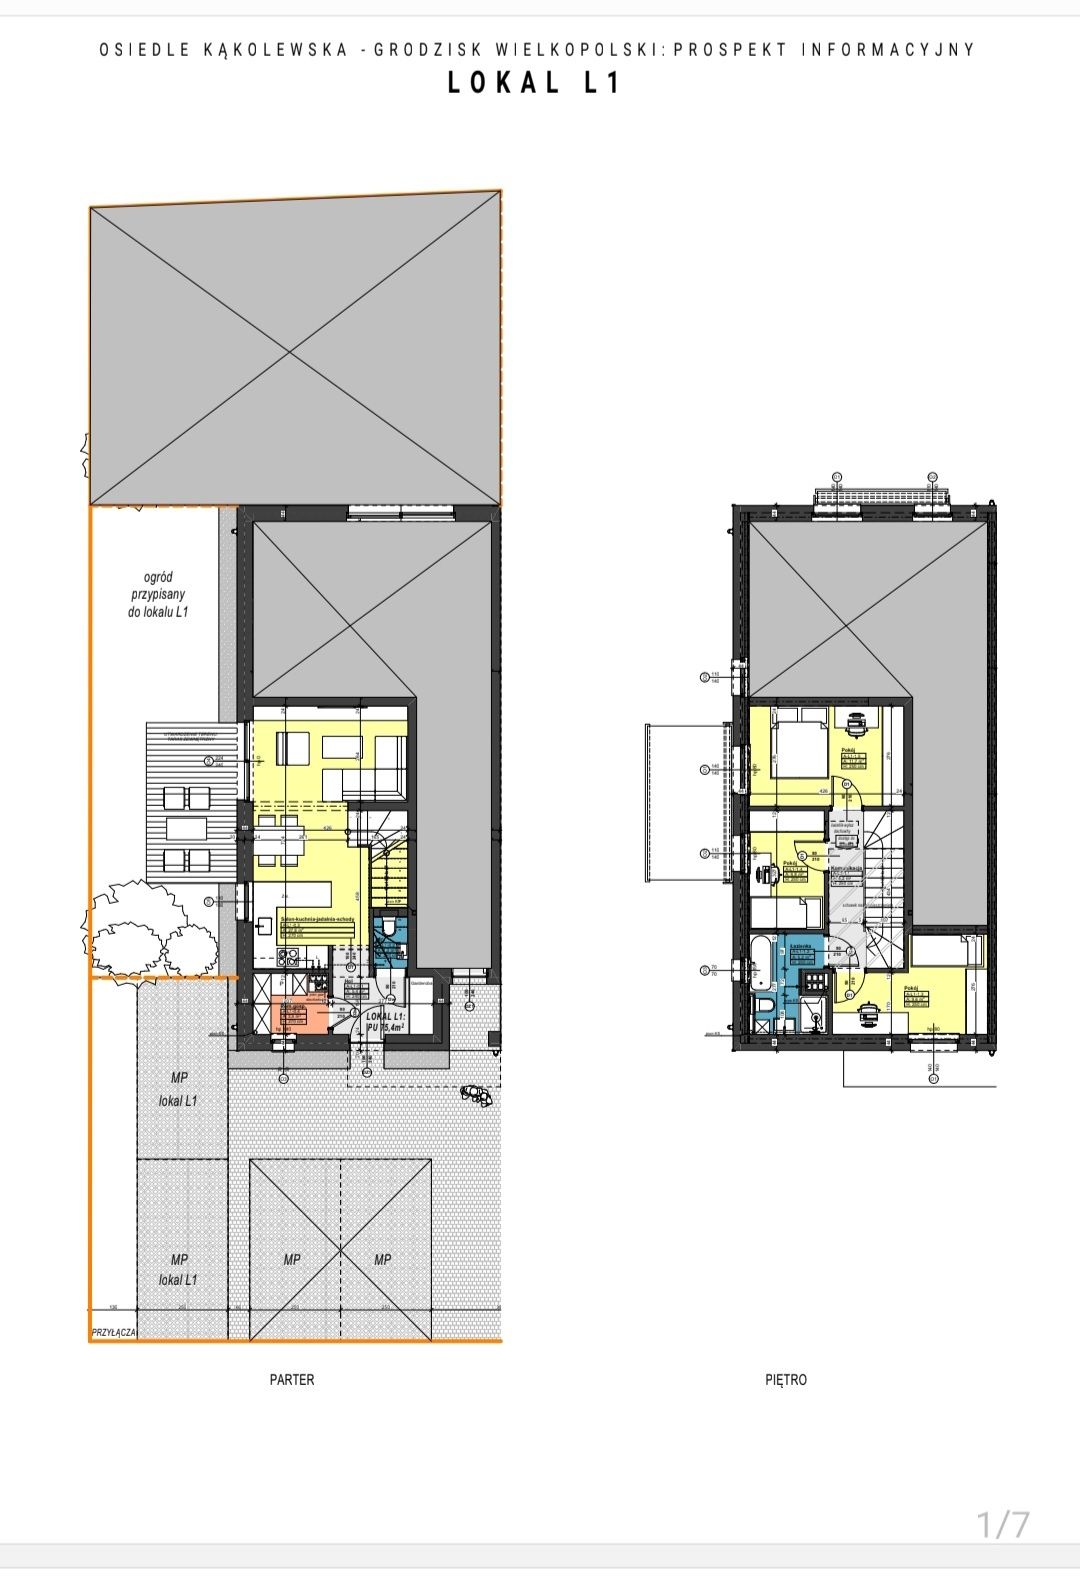 Dwupoziomowe mieszkanie o powierzchni 75,5 m2 z tarasem